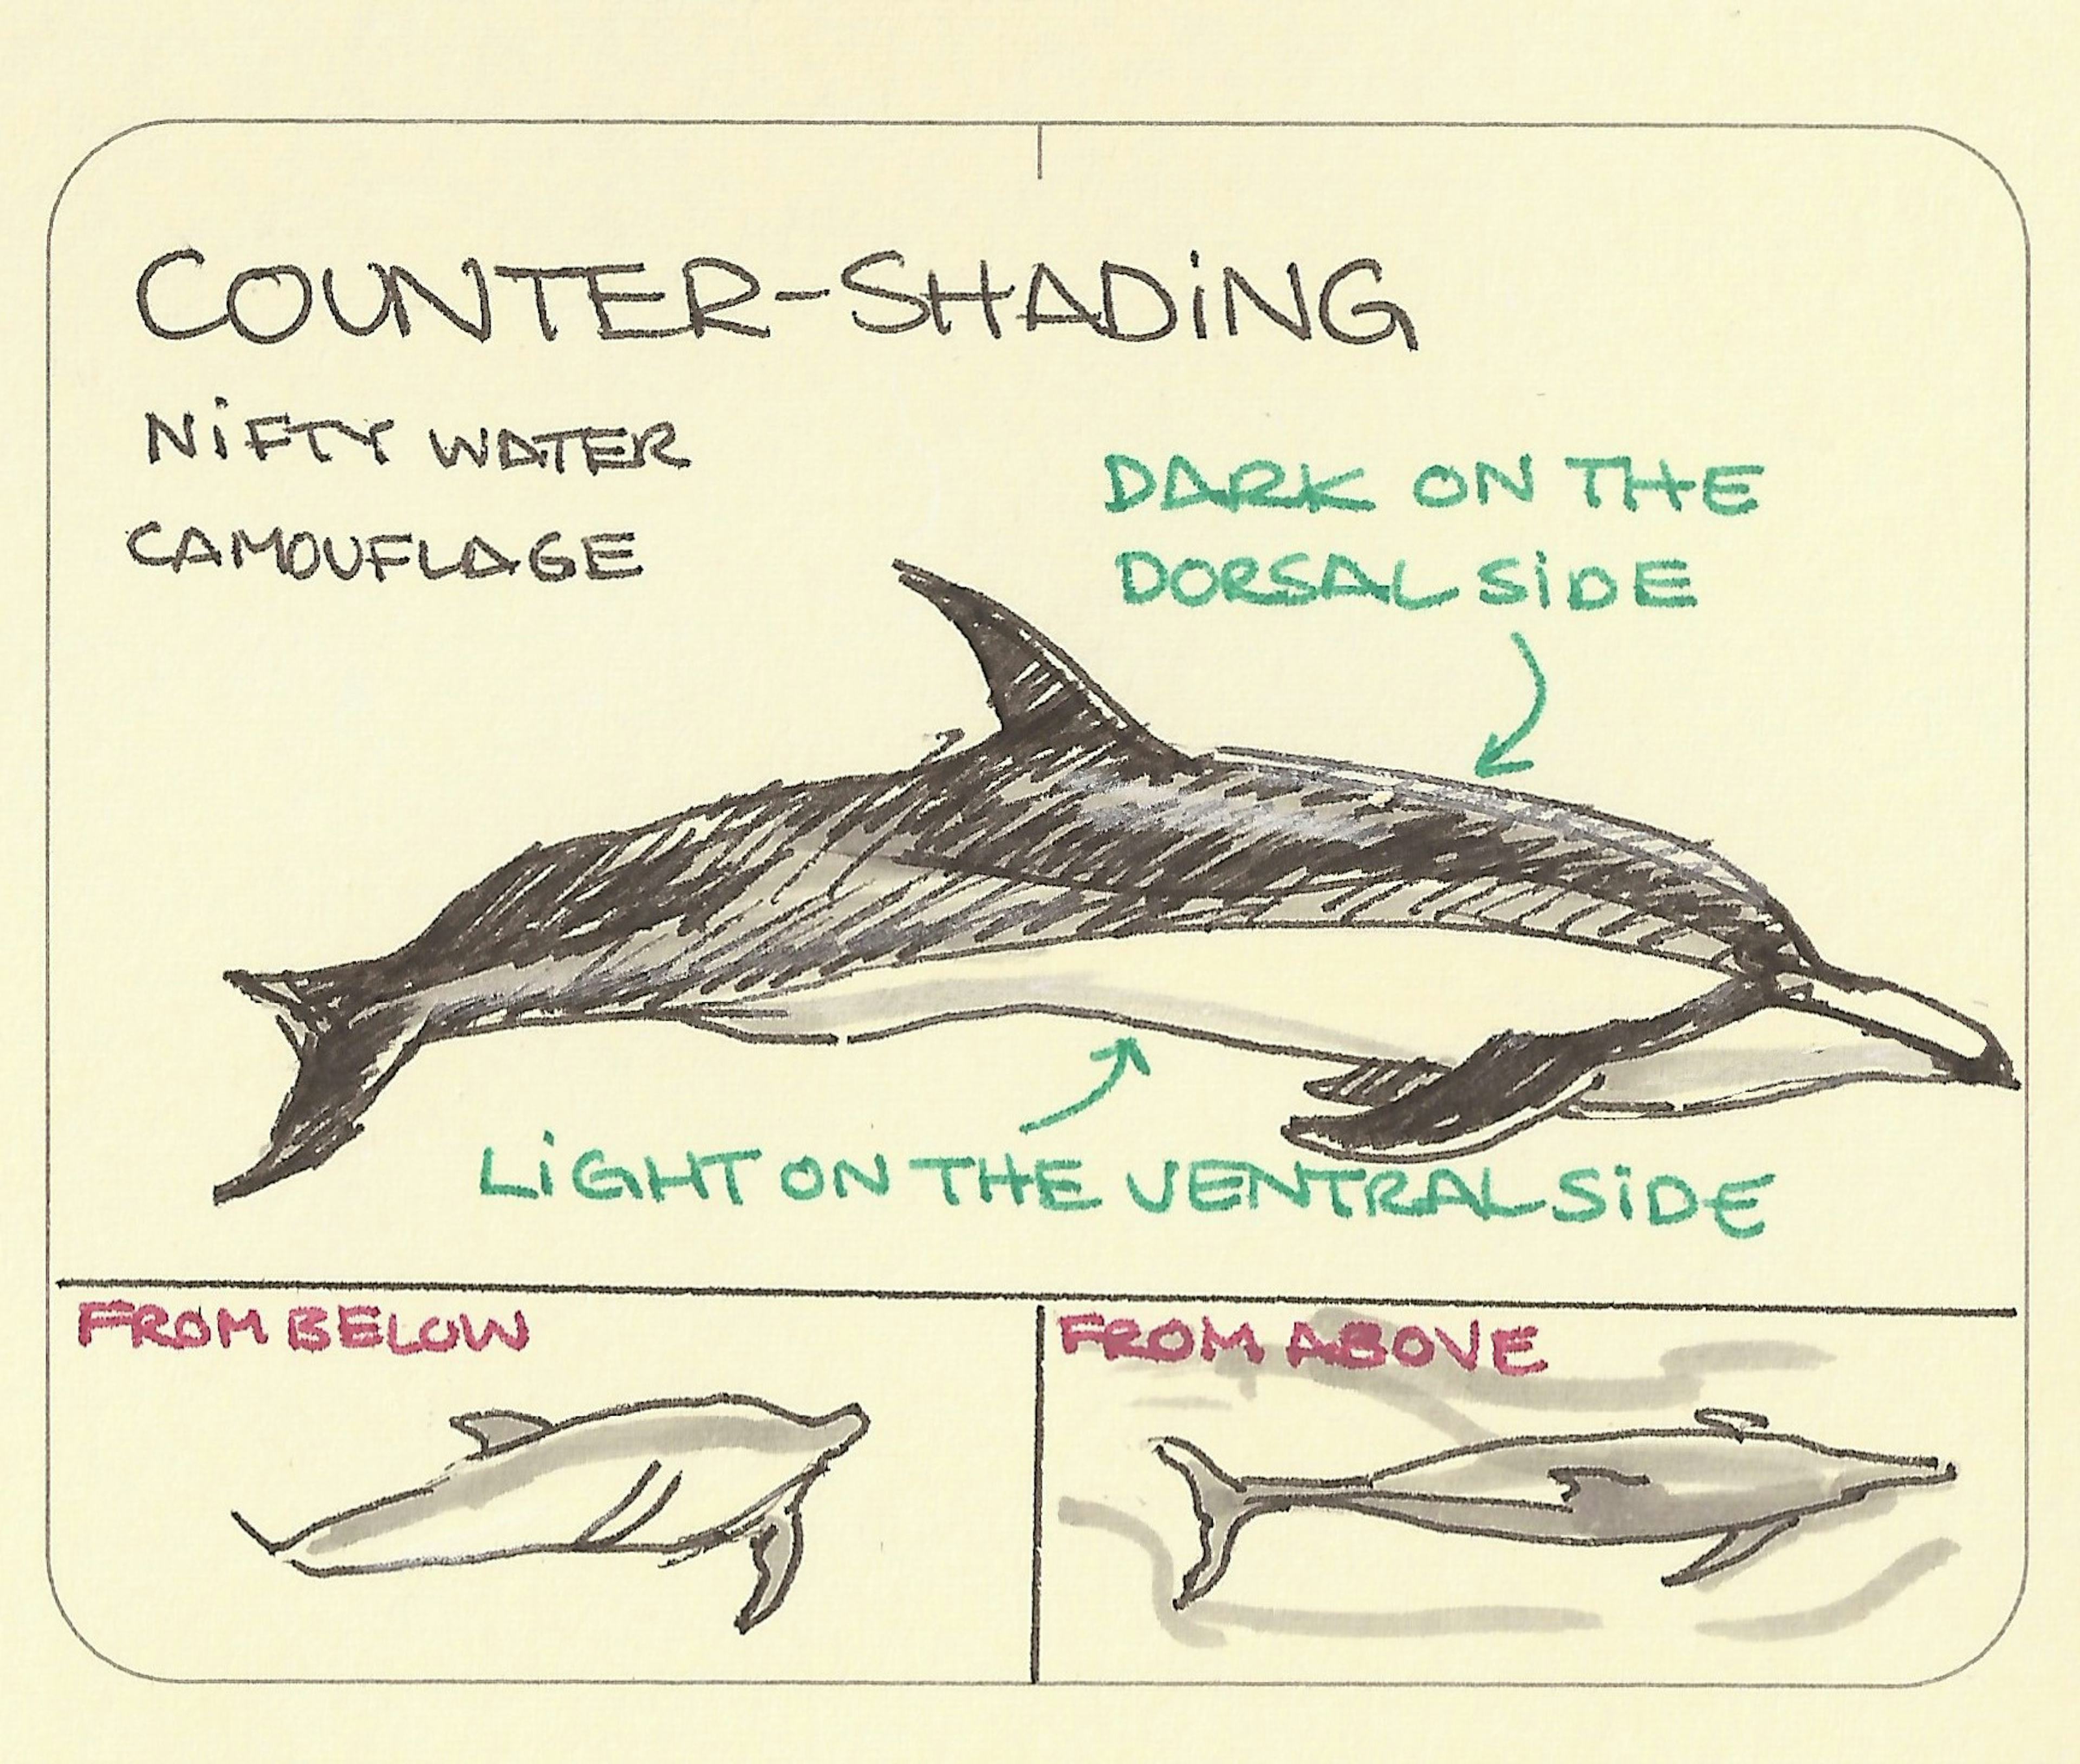 Counter-shading - Sketchplanations